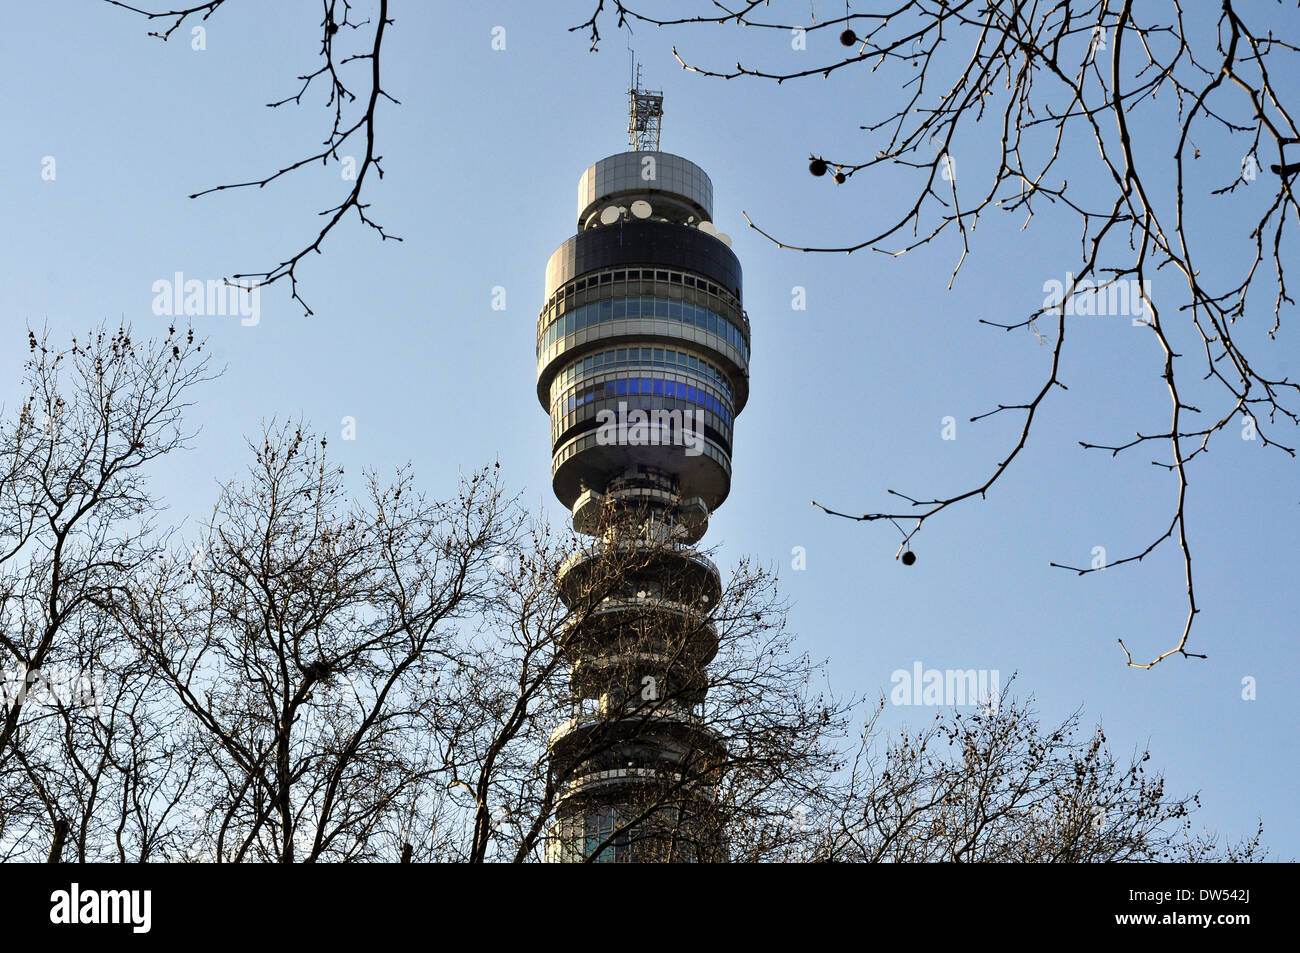 Une vue générale de la BT Tower à Londres, Royaume-Uni Banque D'Images